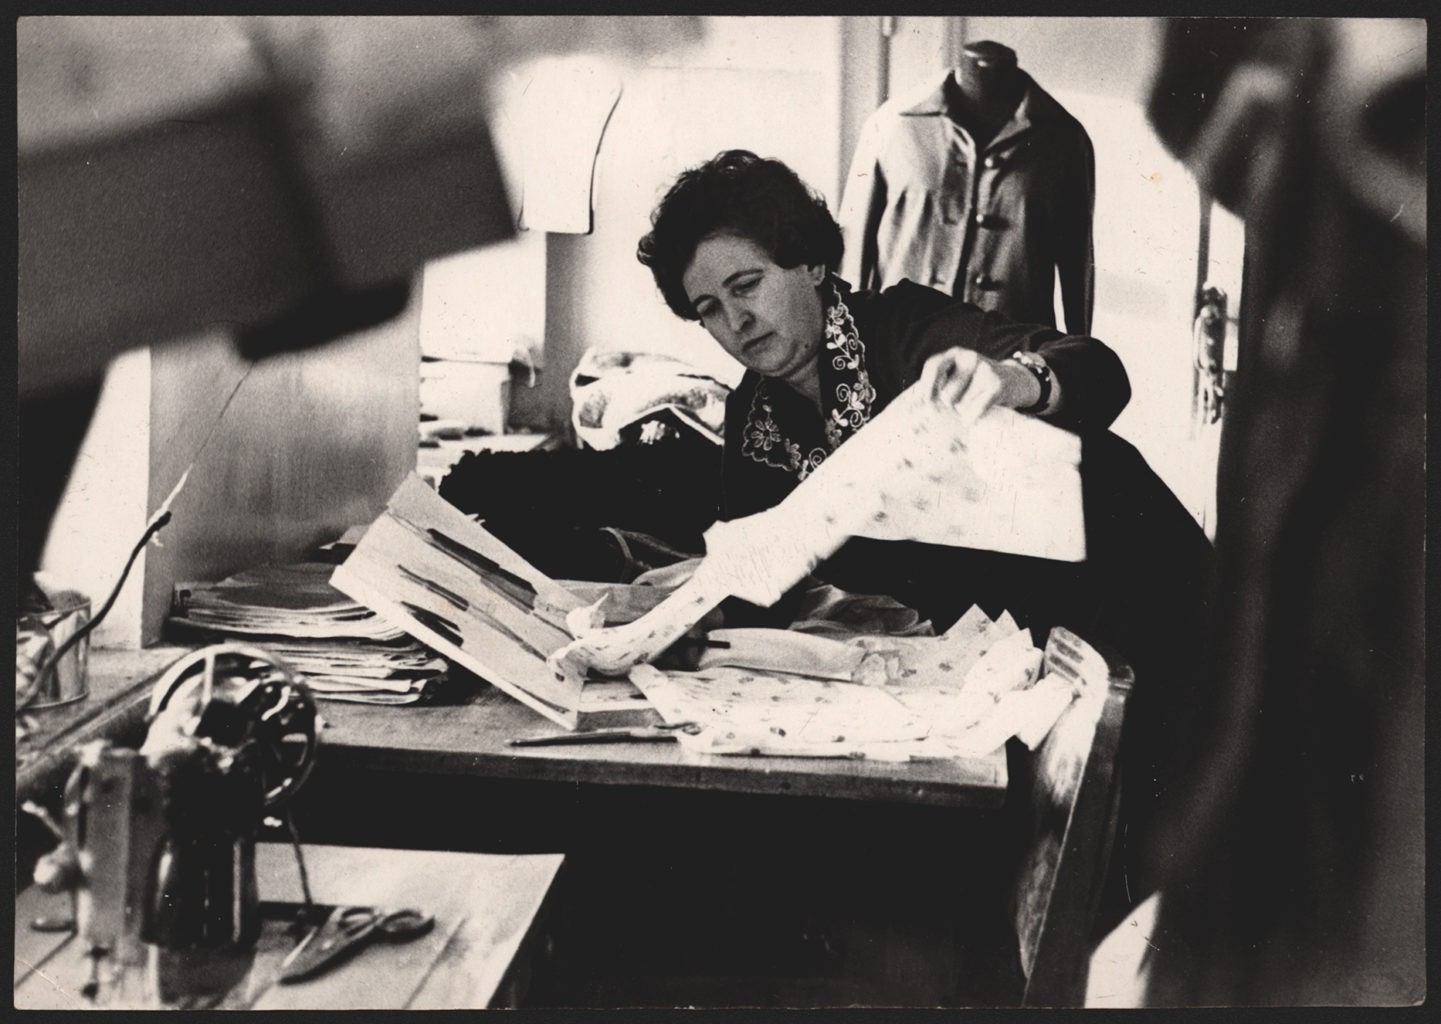 М. Сударева (зав. костюмерным цехом Прокопьевского драматического театра) подбирает ткань для костюма, 1980-е г.: фотография